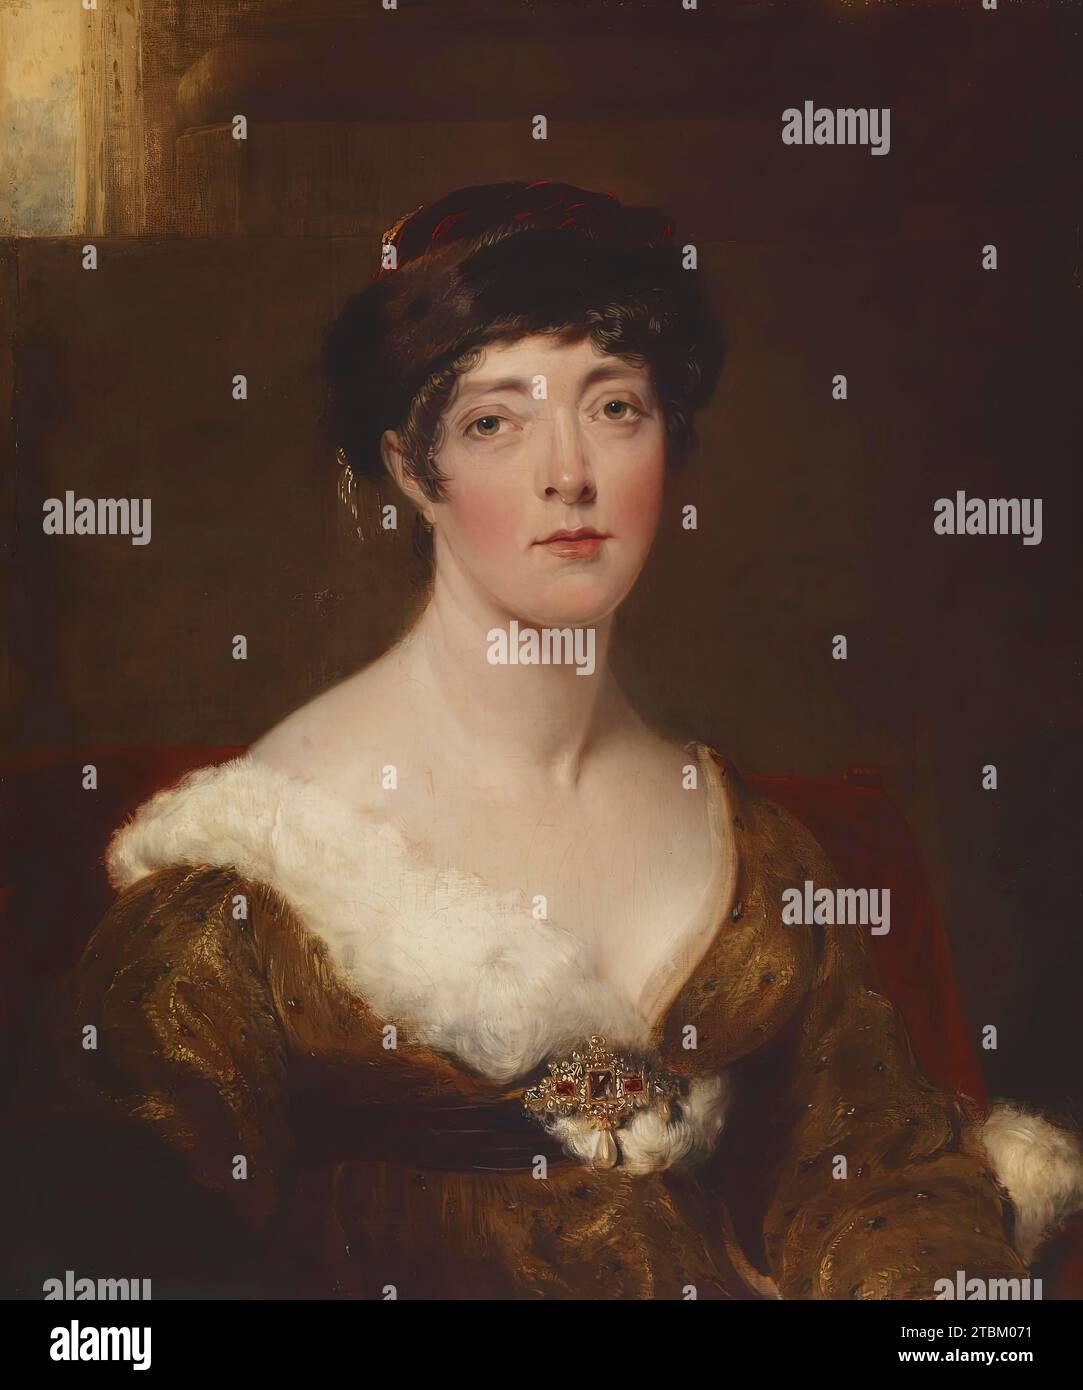 Die Marchioness von Sutherland, nach 1816. Die Gräfin trägt einen turbanbesetzten Pelzbesatz und ein goldgelbes Kleid mit Hermelin. An ihrem Mieder ist eine große Juwelenbrosche angebracht, an der eine barocke Perle aufgehängt ist. Stockfoto